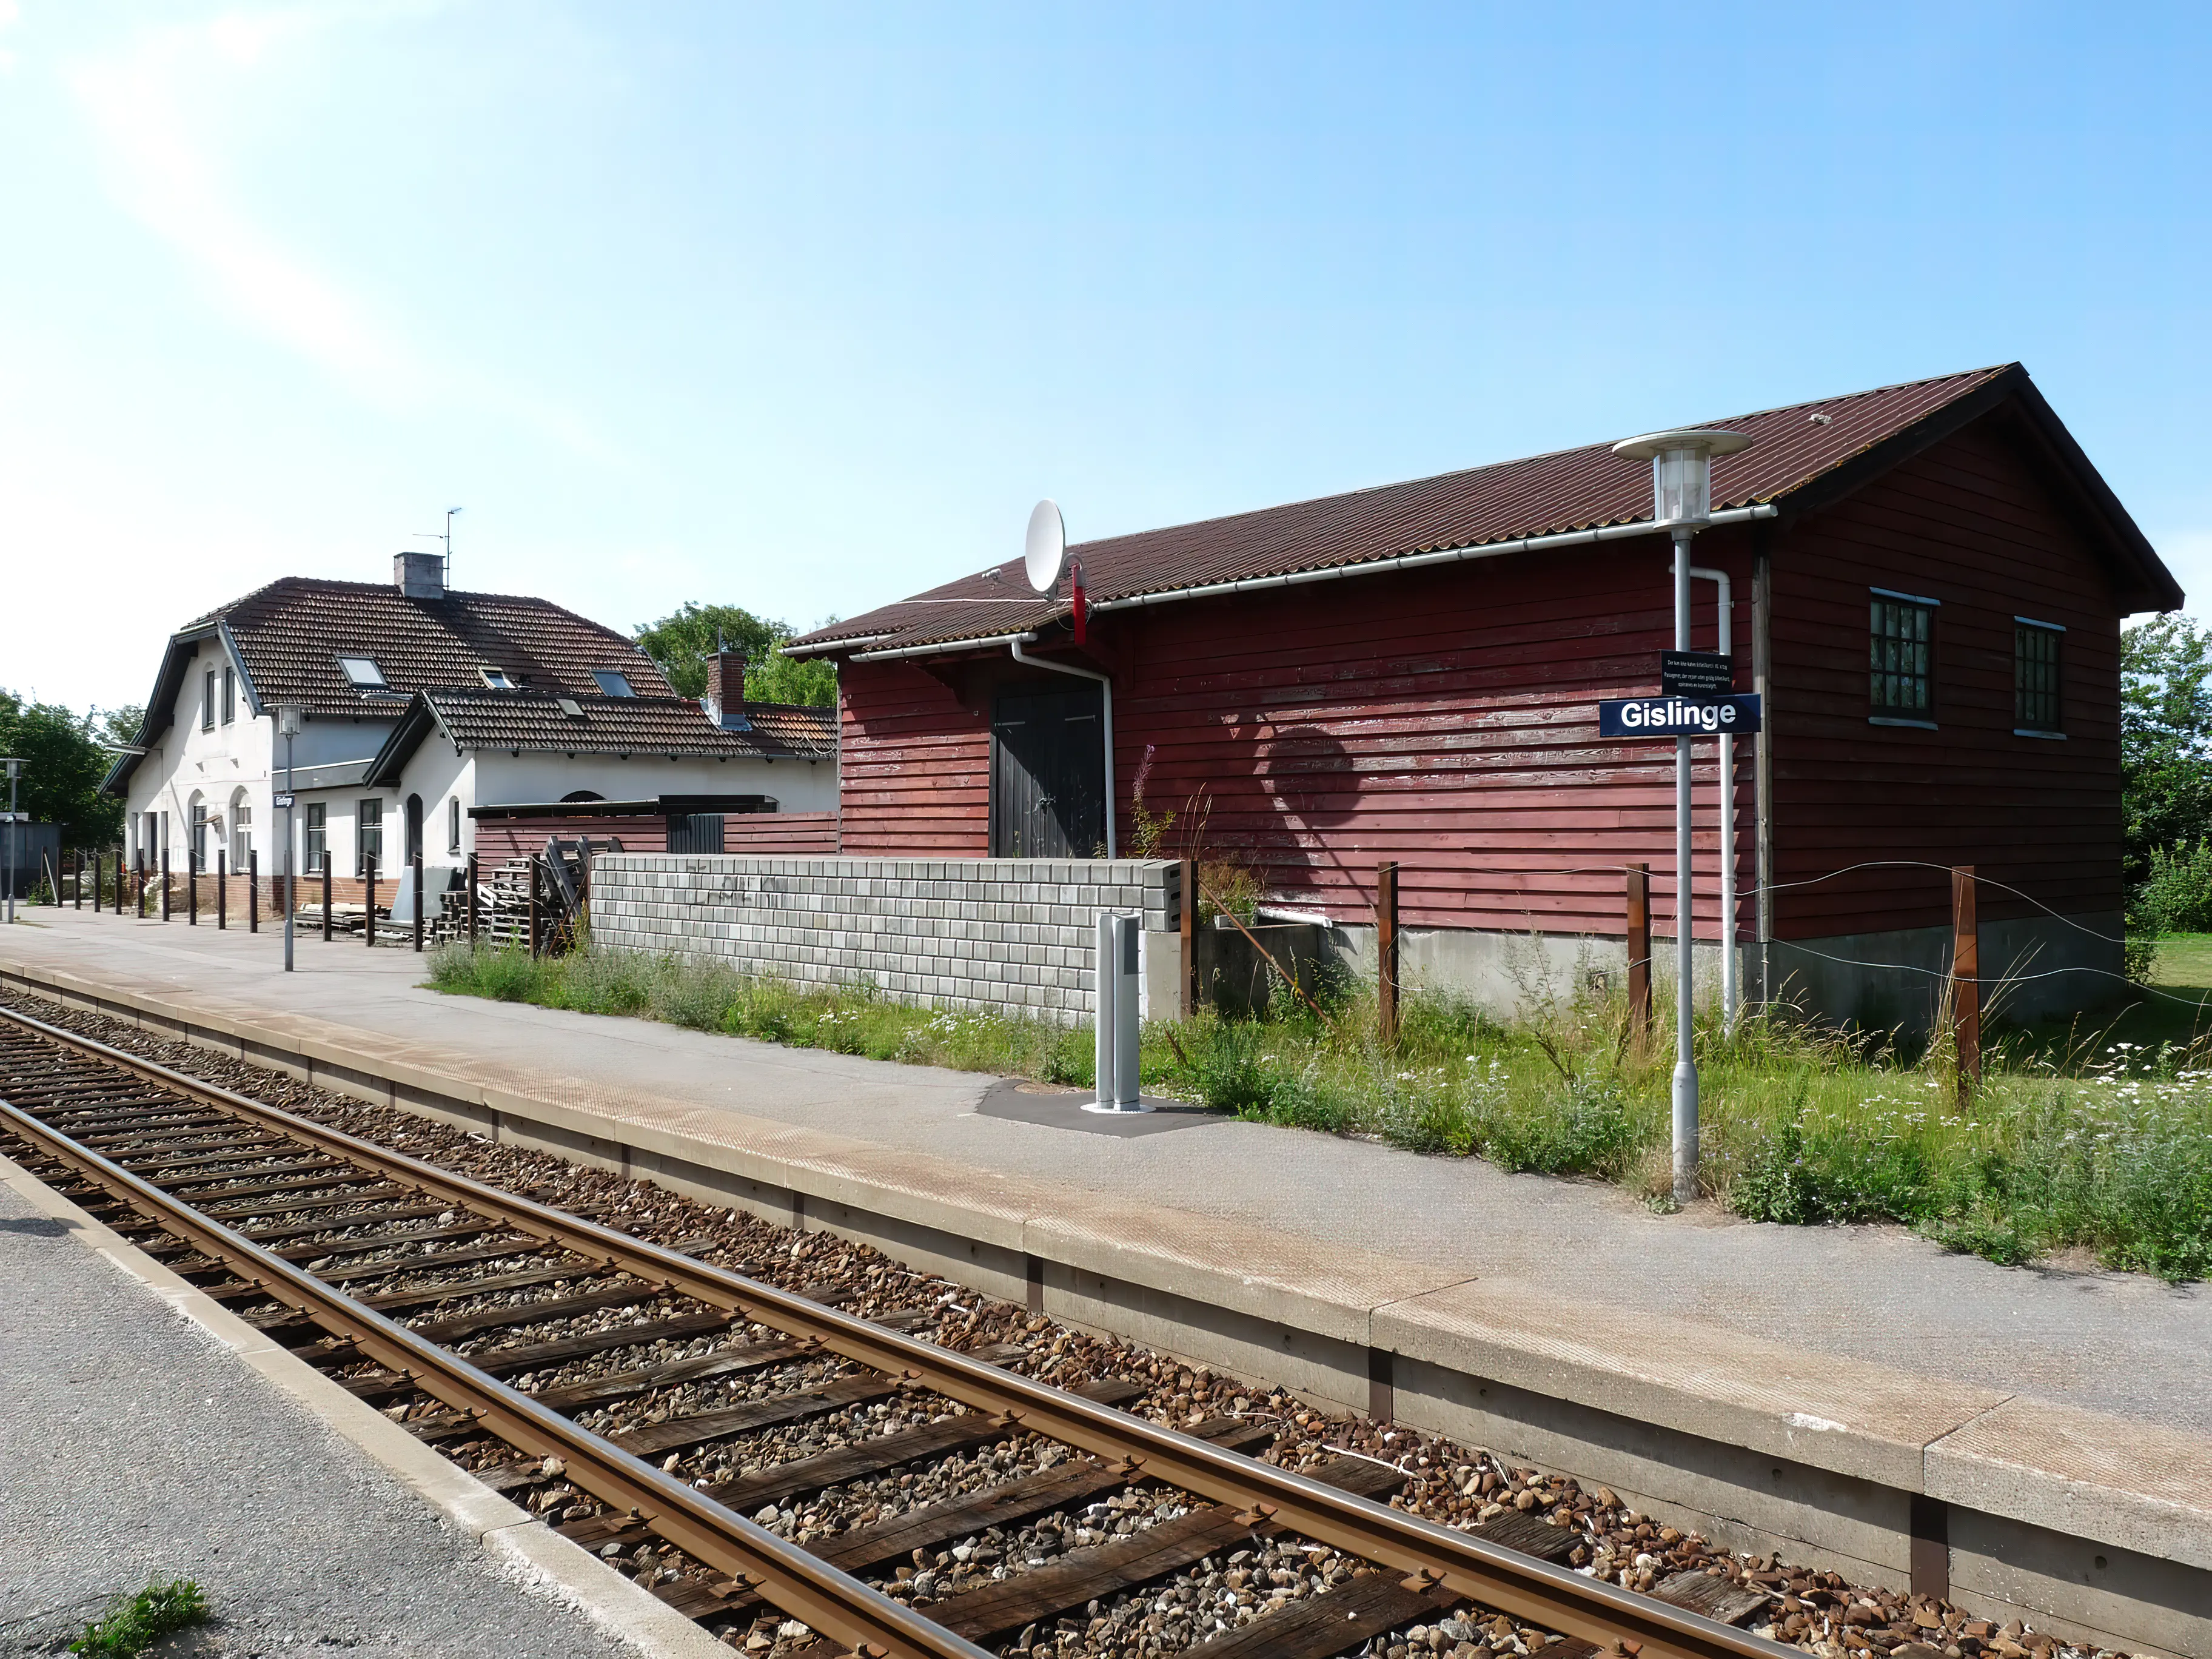 Billede af Gislinge Stations pakhus.